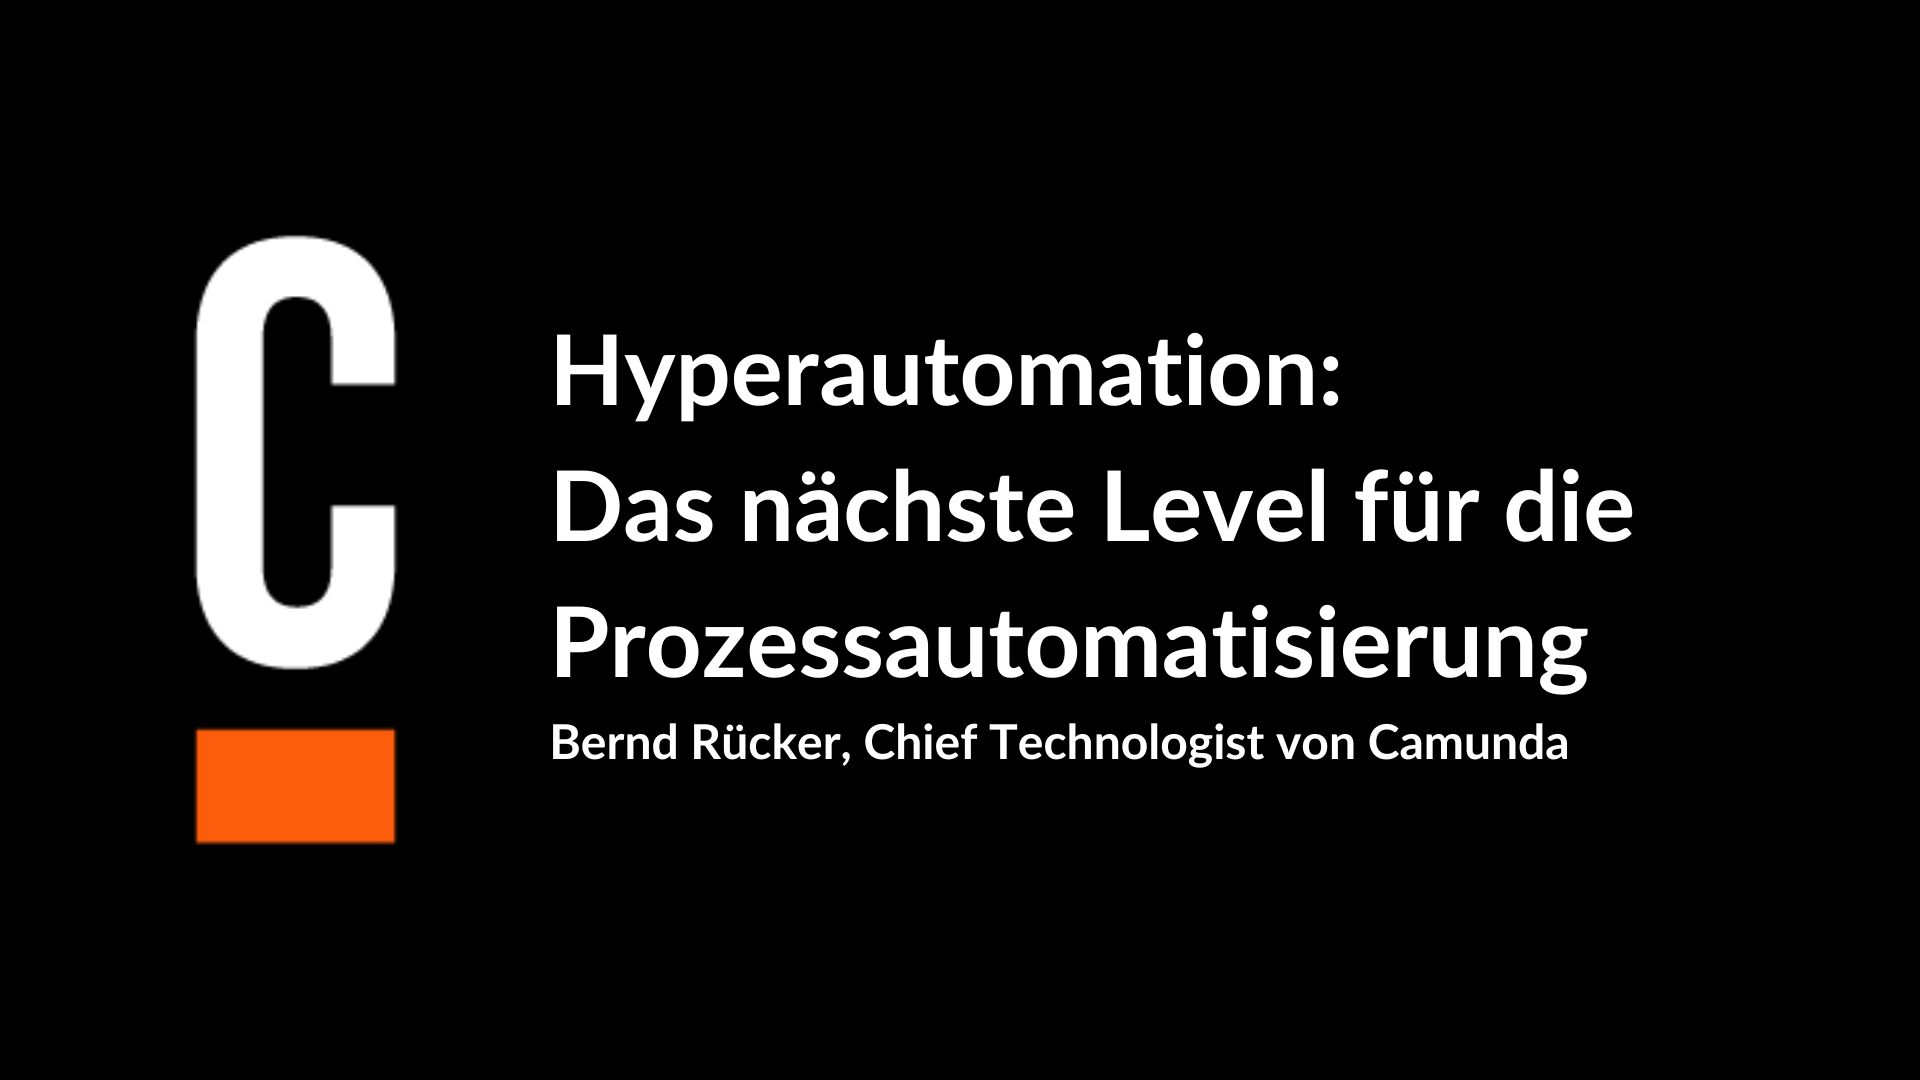 Hyperautomation: Das nächste Level für die Prozessautomatisierung